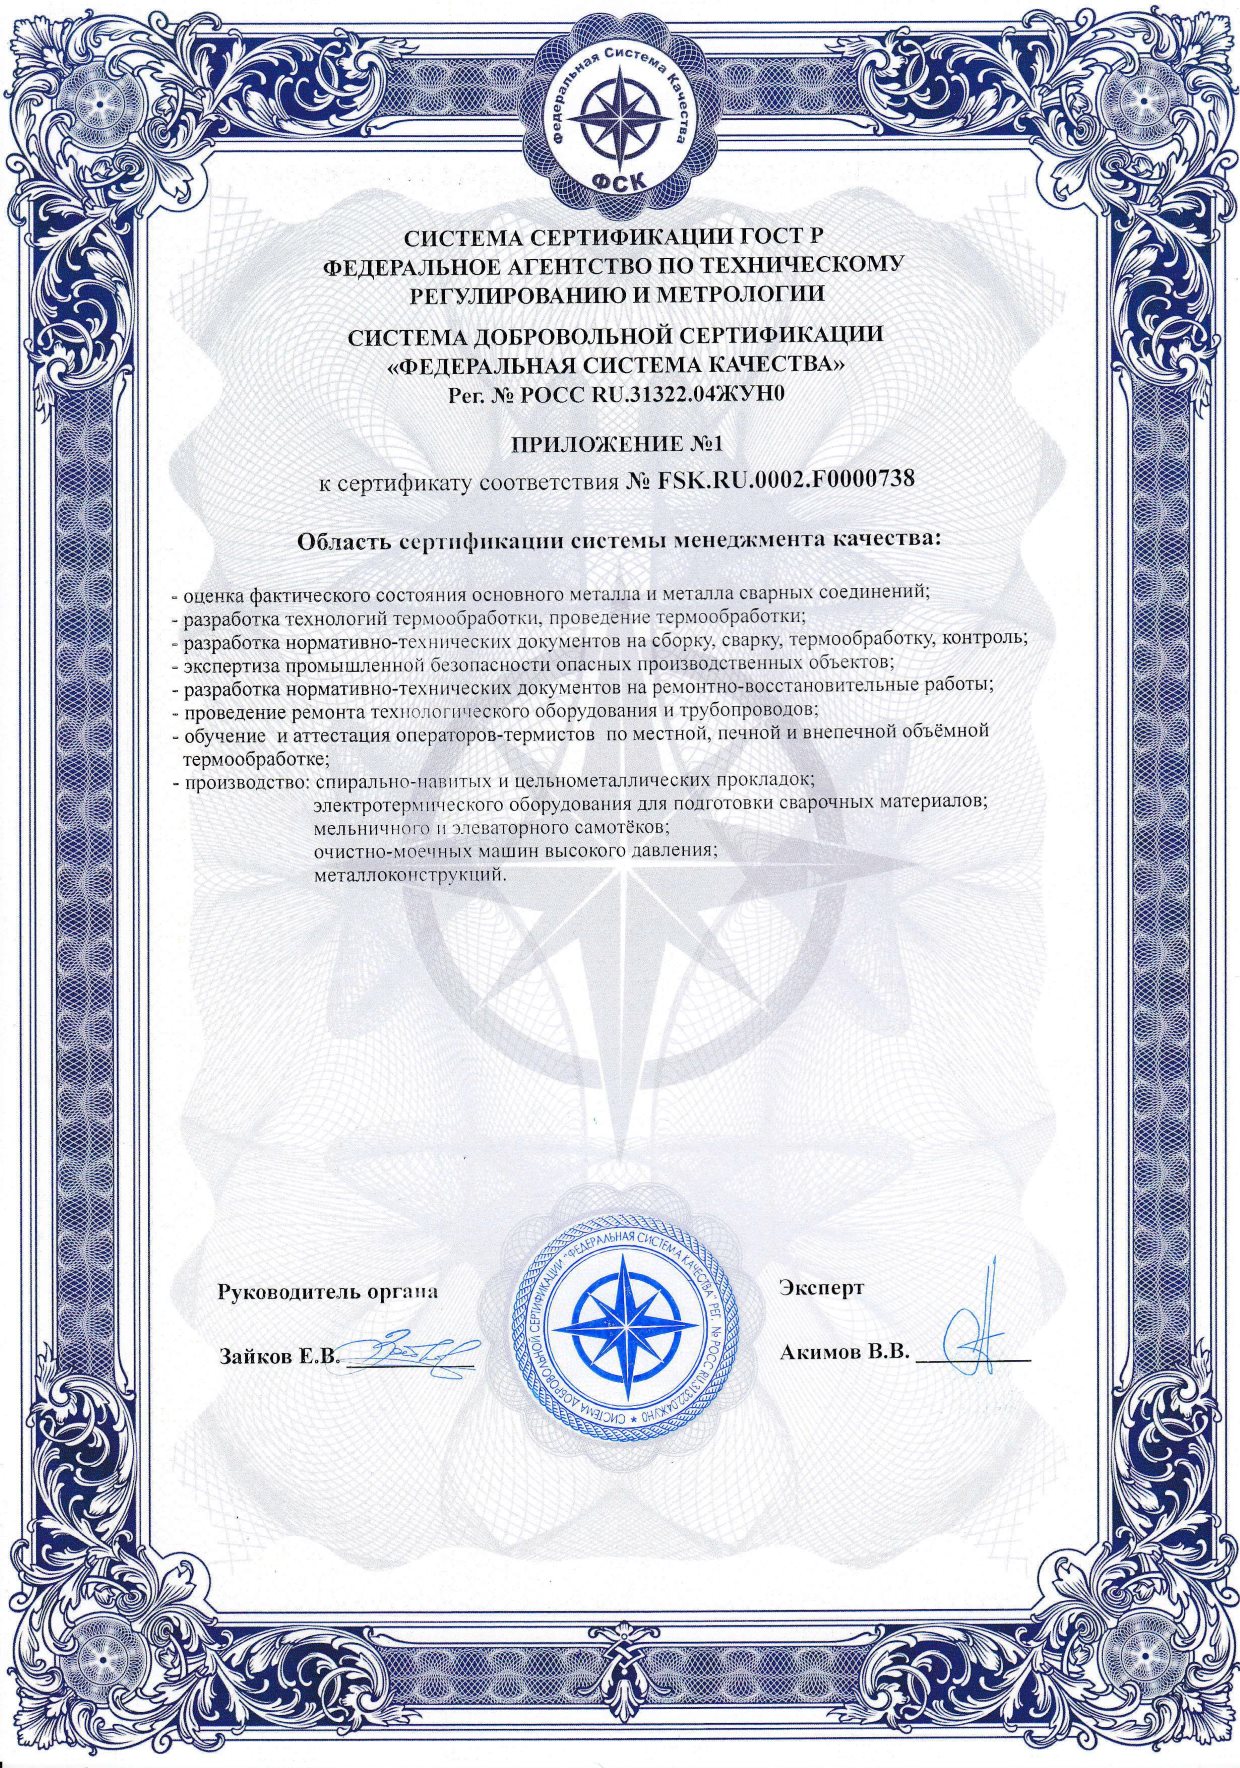 Приложение к сертификату СМК